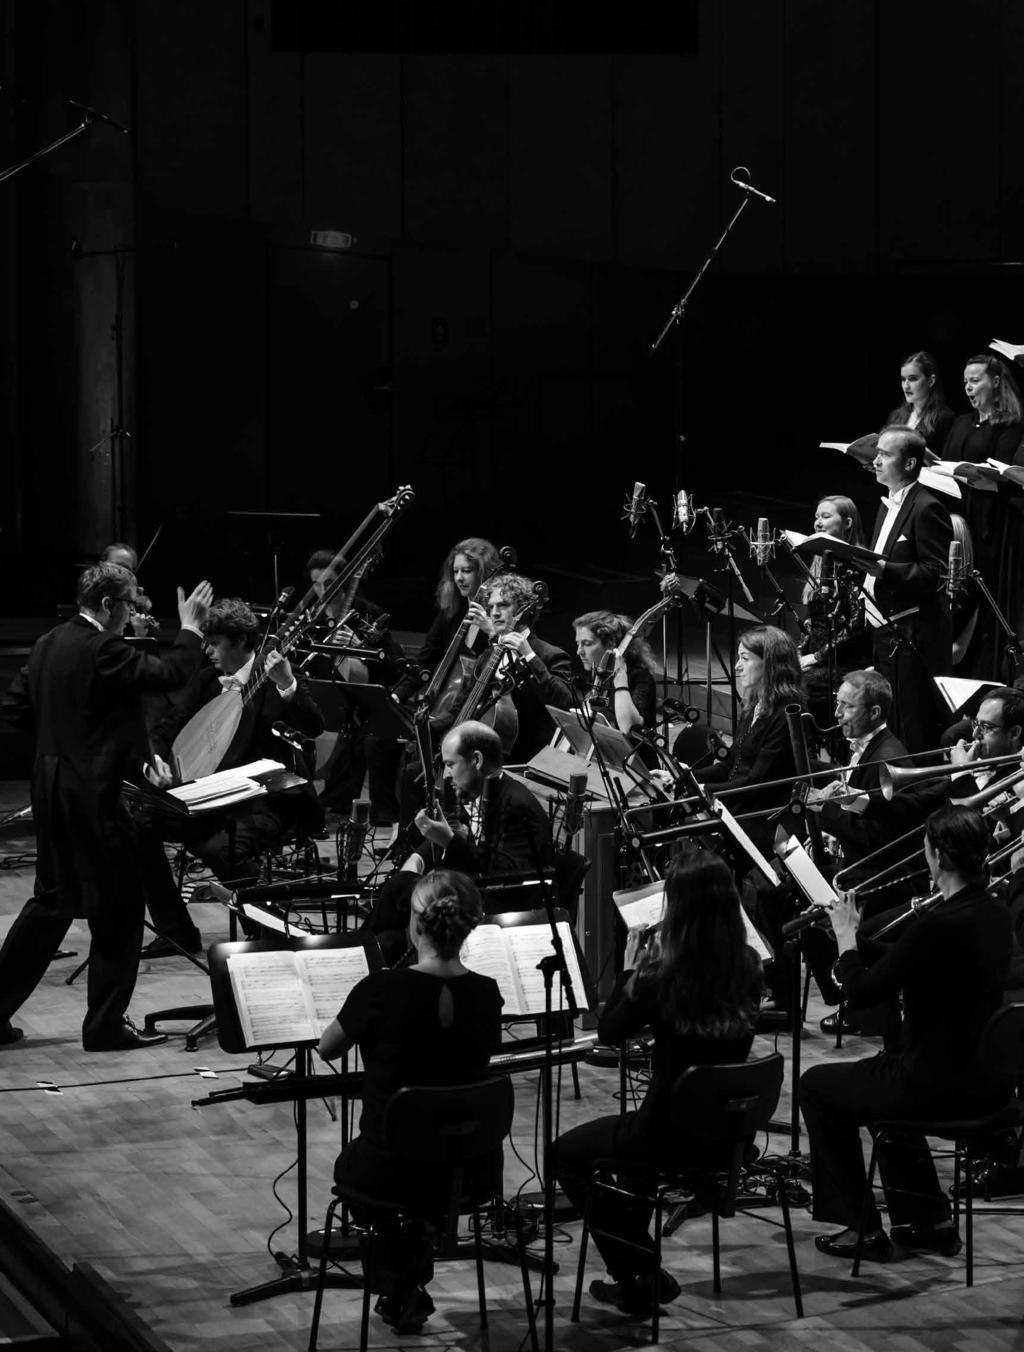 Gaechinger Cantorey die Ensembles der Bachakademie Mit der Saison 2016/17 beginnt eine neue Zeitrechnung für die weltbekannten Ensembles der Internationalen Bachakademie Stu:gart, die dann unter dem